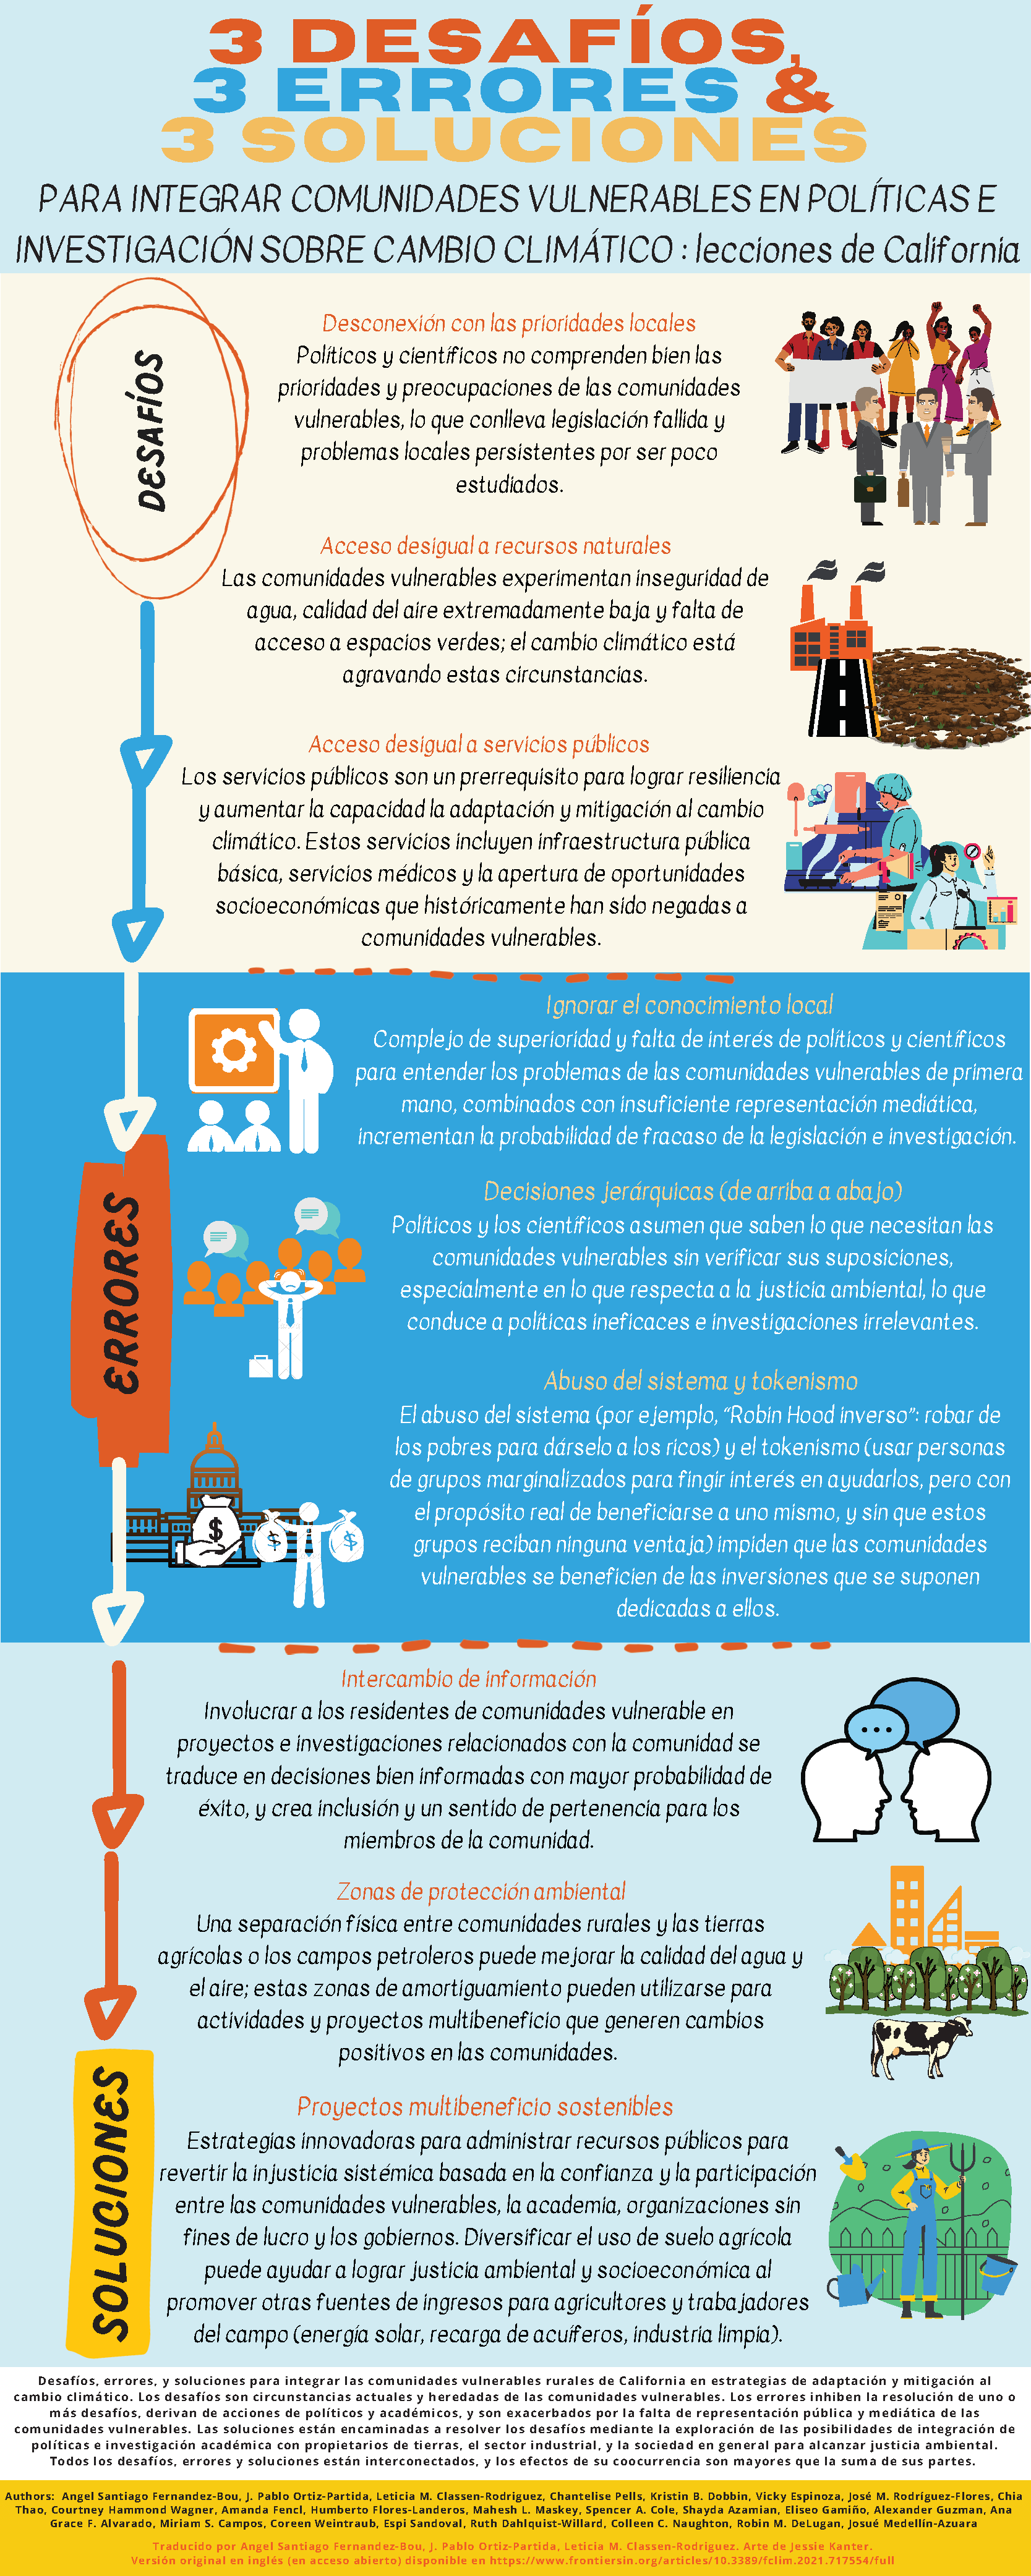 Infográfico en español: 3 desafíos, 3 errores y 3 soluciones para integrar comunidades desventajadas en investigación y legislación sobre cambio climático